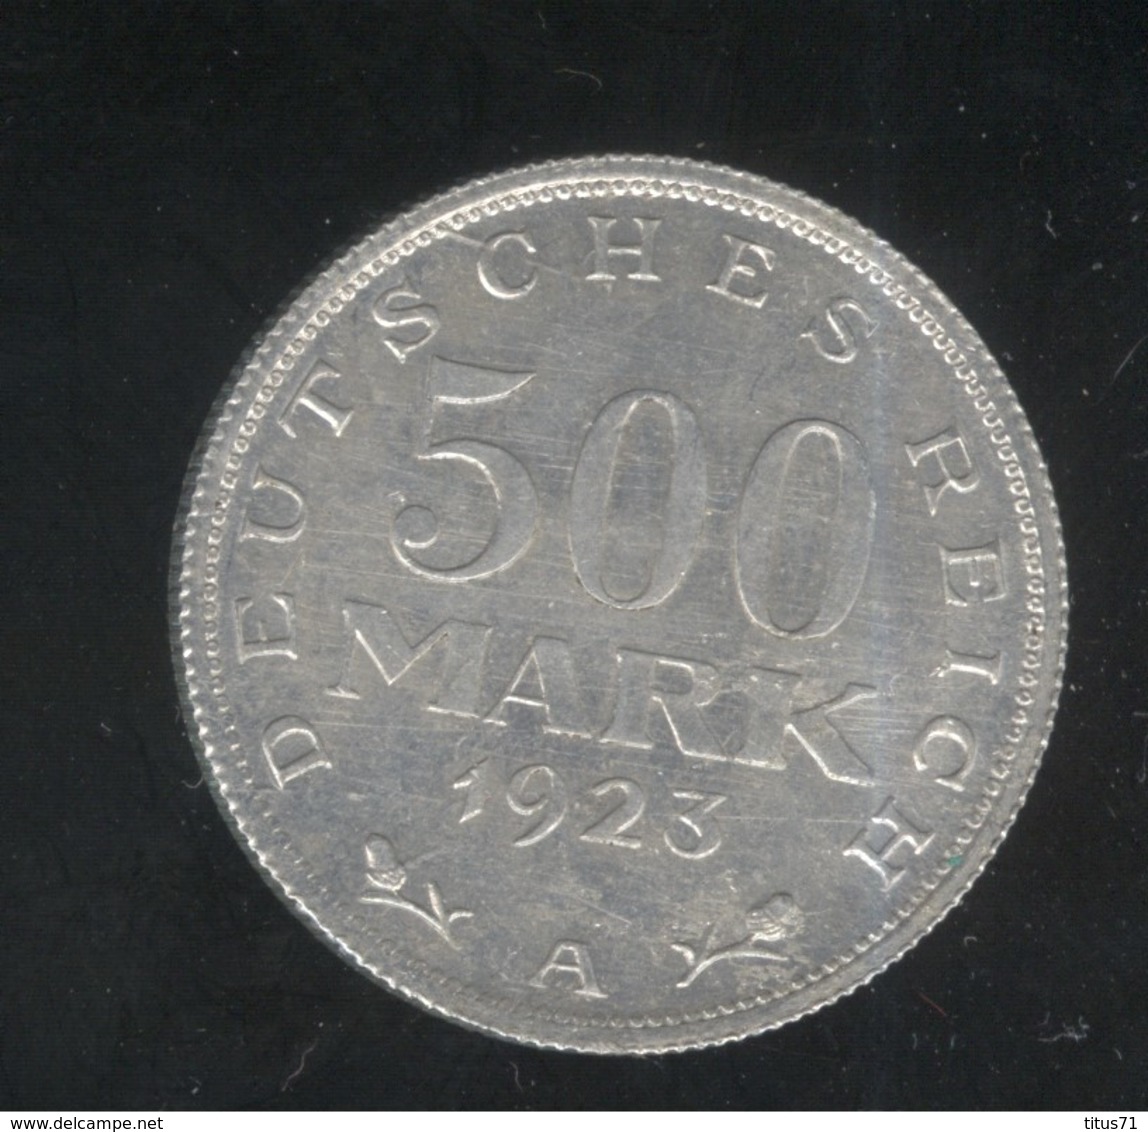 500 Mark Allemagne / Germany 1923 A - TTB++ - 50 Rentenpfennig & 50 Reichspfennig